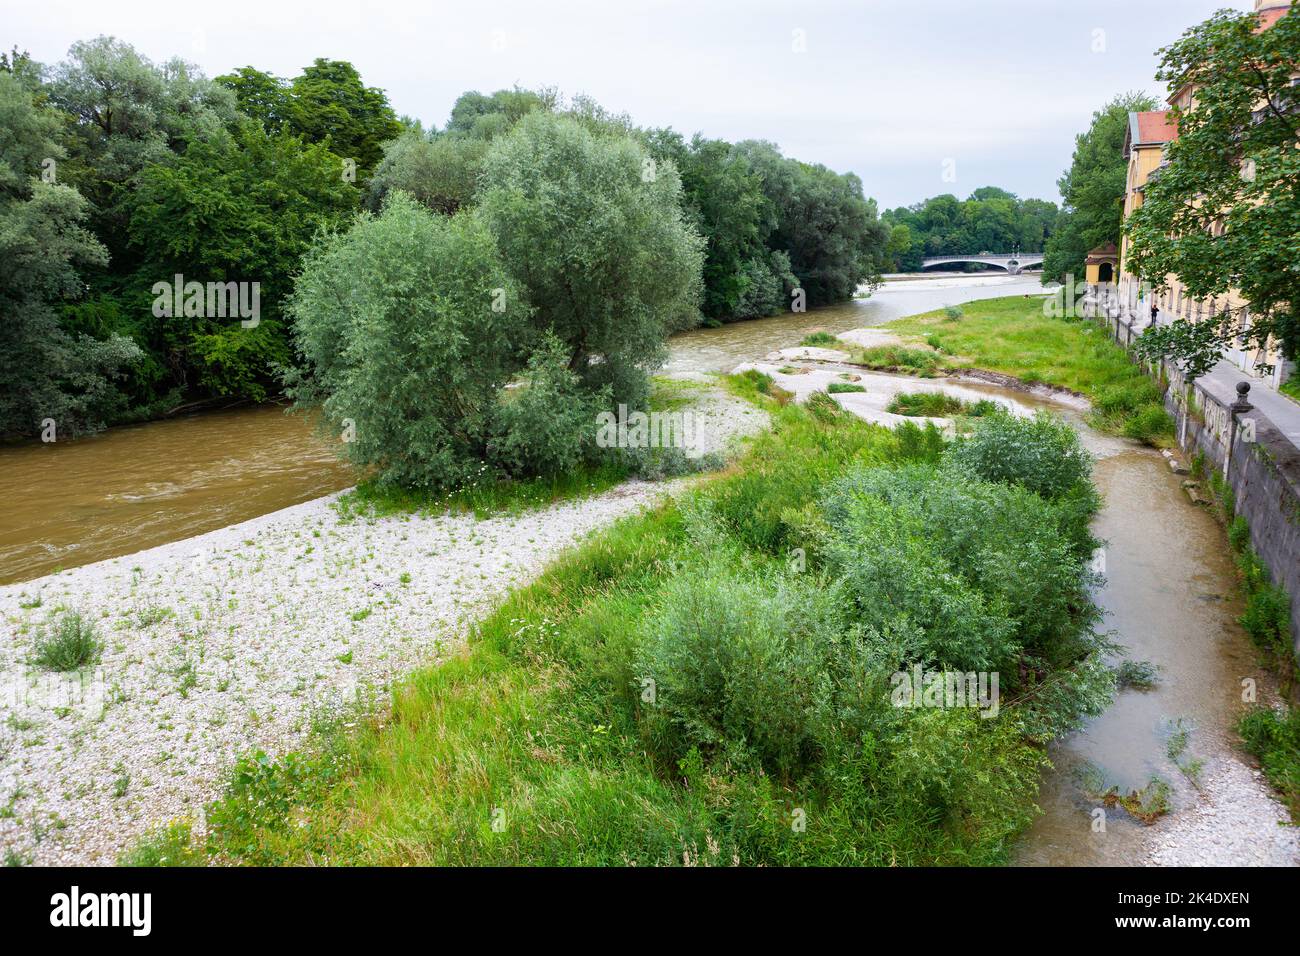 La rivière Isar, qui s'étend du nord au sud à Munich, en Allemagne, s'assèche pendant l'été. Banque D'Images